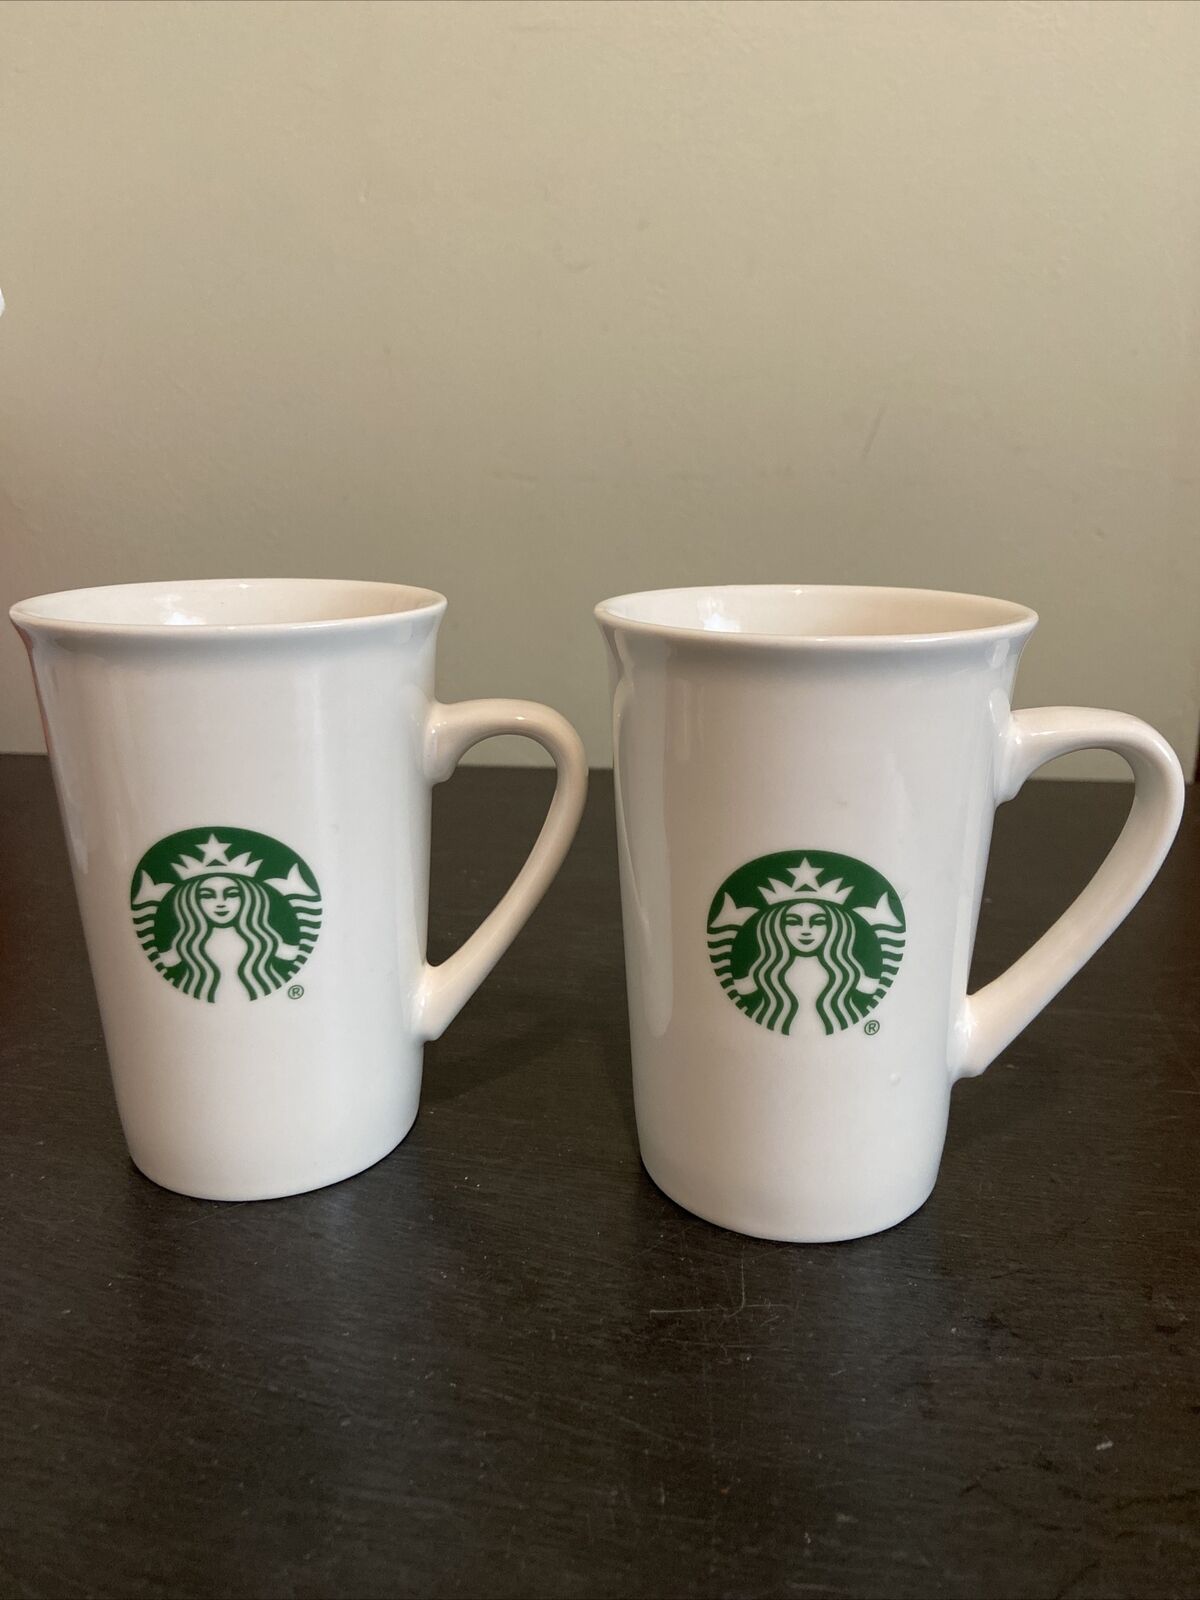 2 Starbucks Ceramic Tall Coffee Mug Classic Mermaid Logo 10oz 2019 White Green